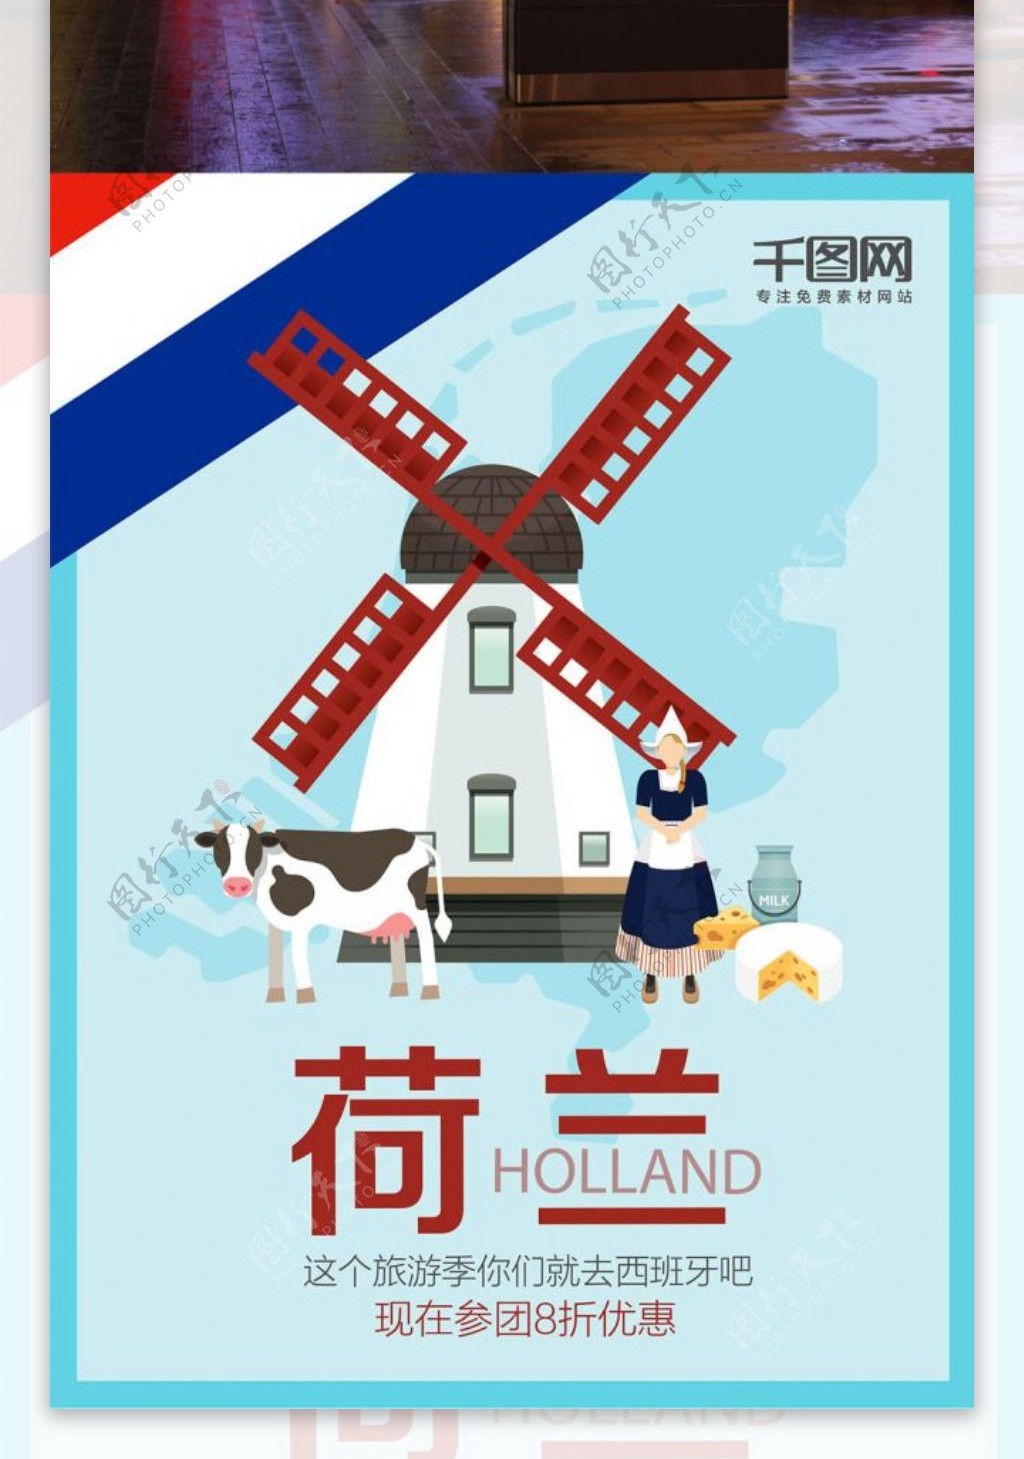 X字母荷兰旅游海报设计